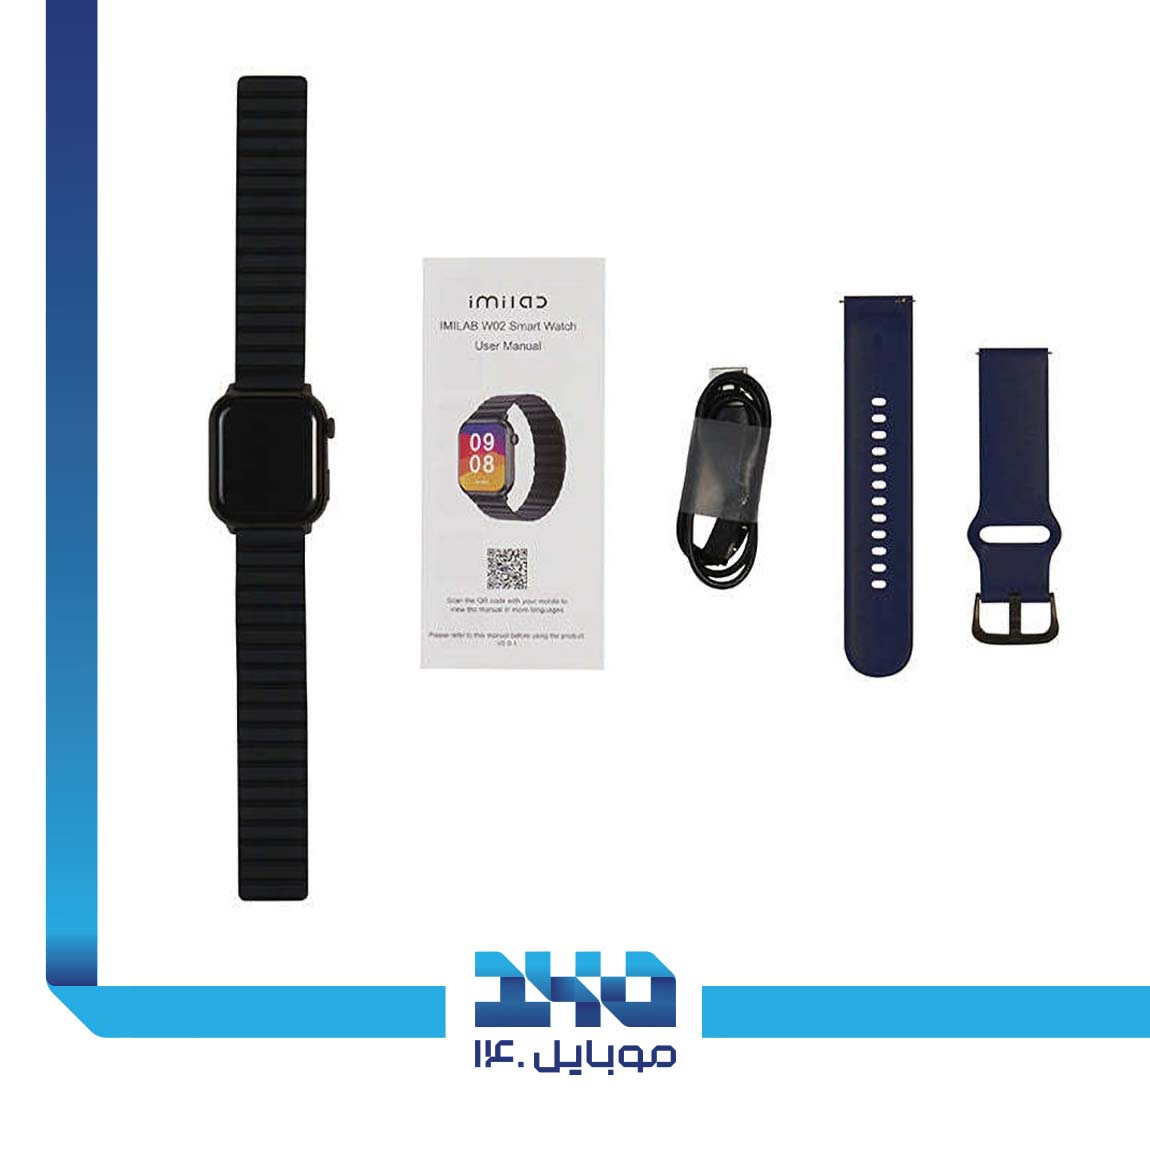 Imilab W02 smart watch 5